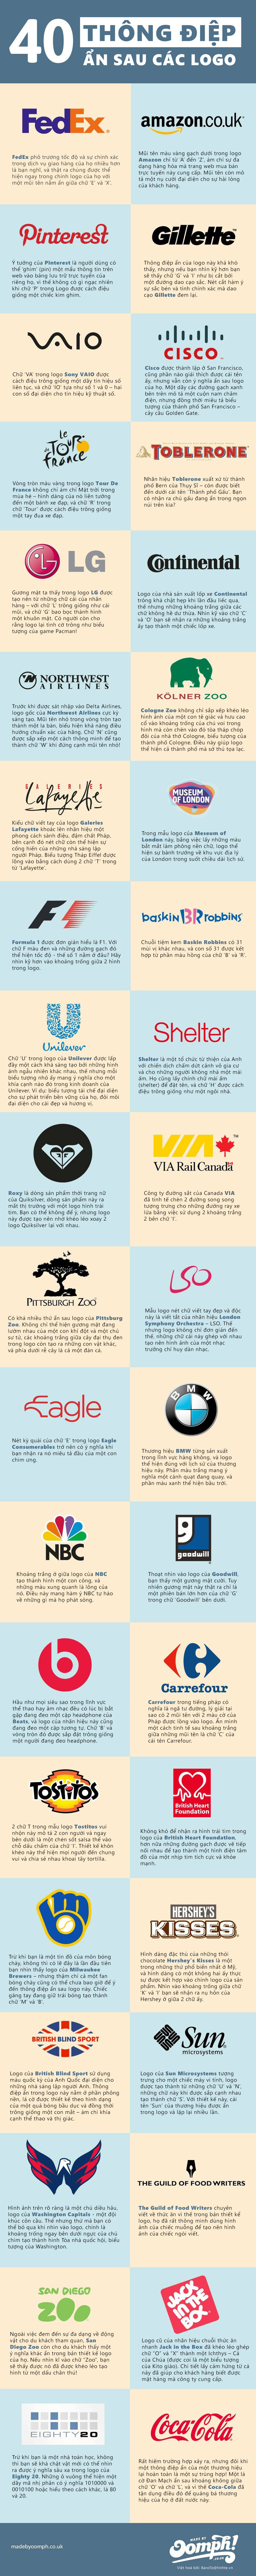 [Infographic] 40 logo ẩn chứa thông điệp doanh nghiệp 8